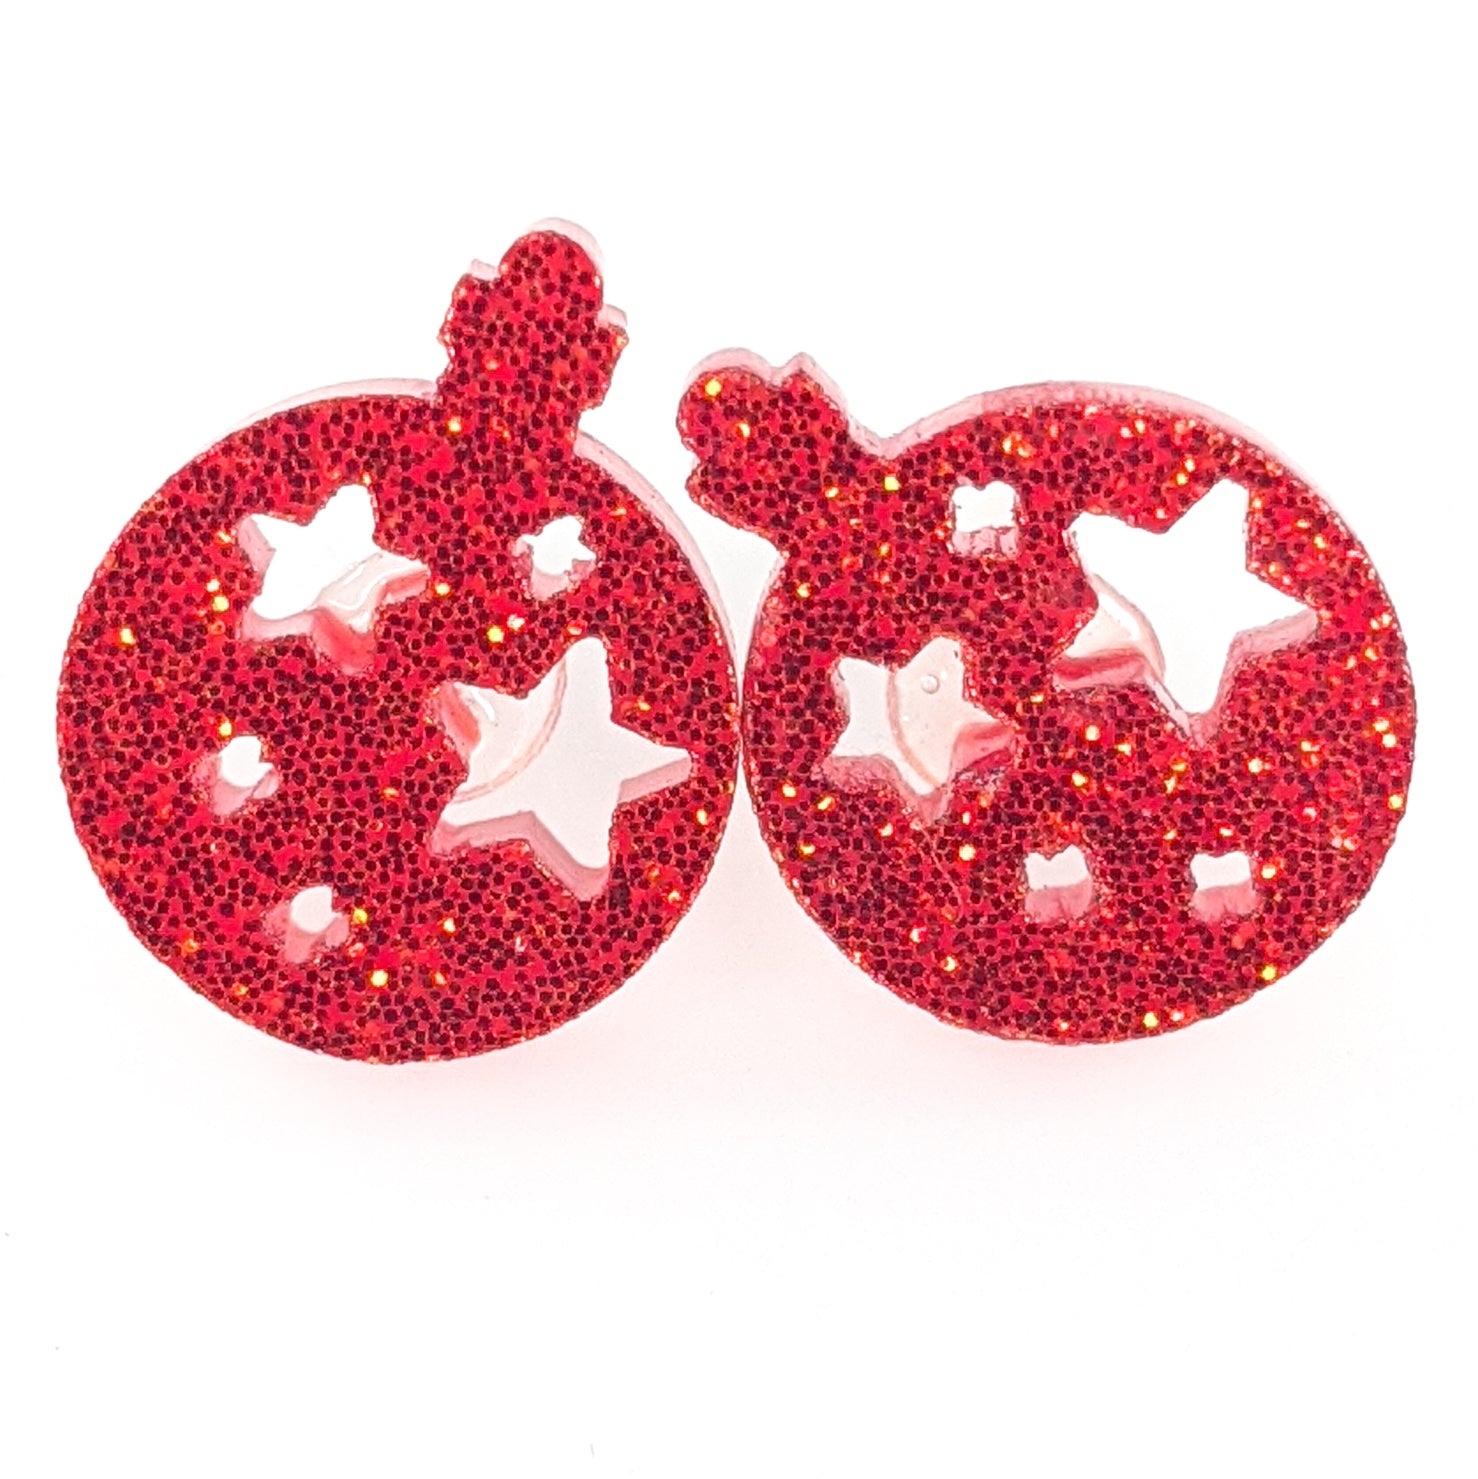  Christmas Ornament Earrings (Studs) - red glitter